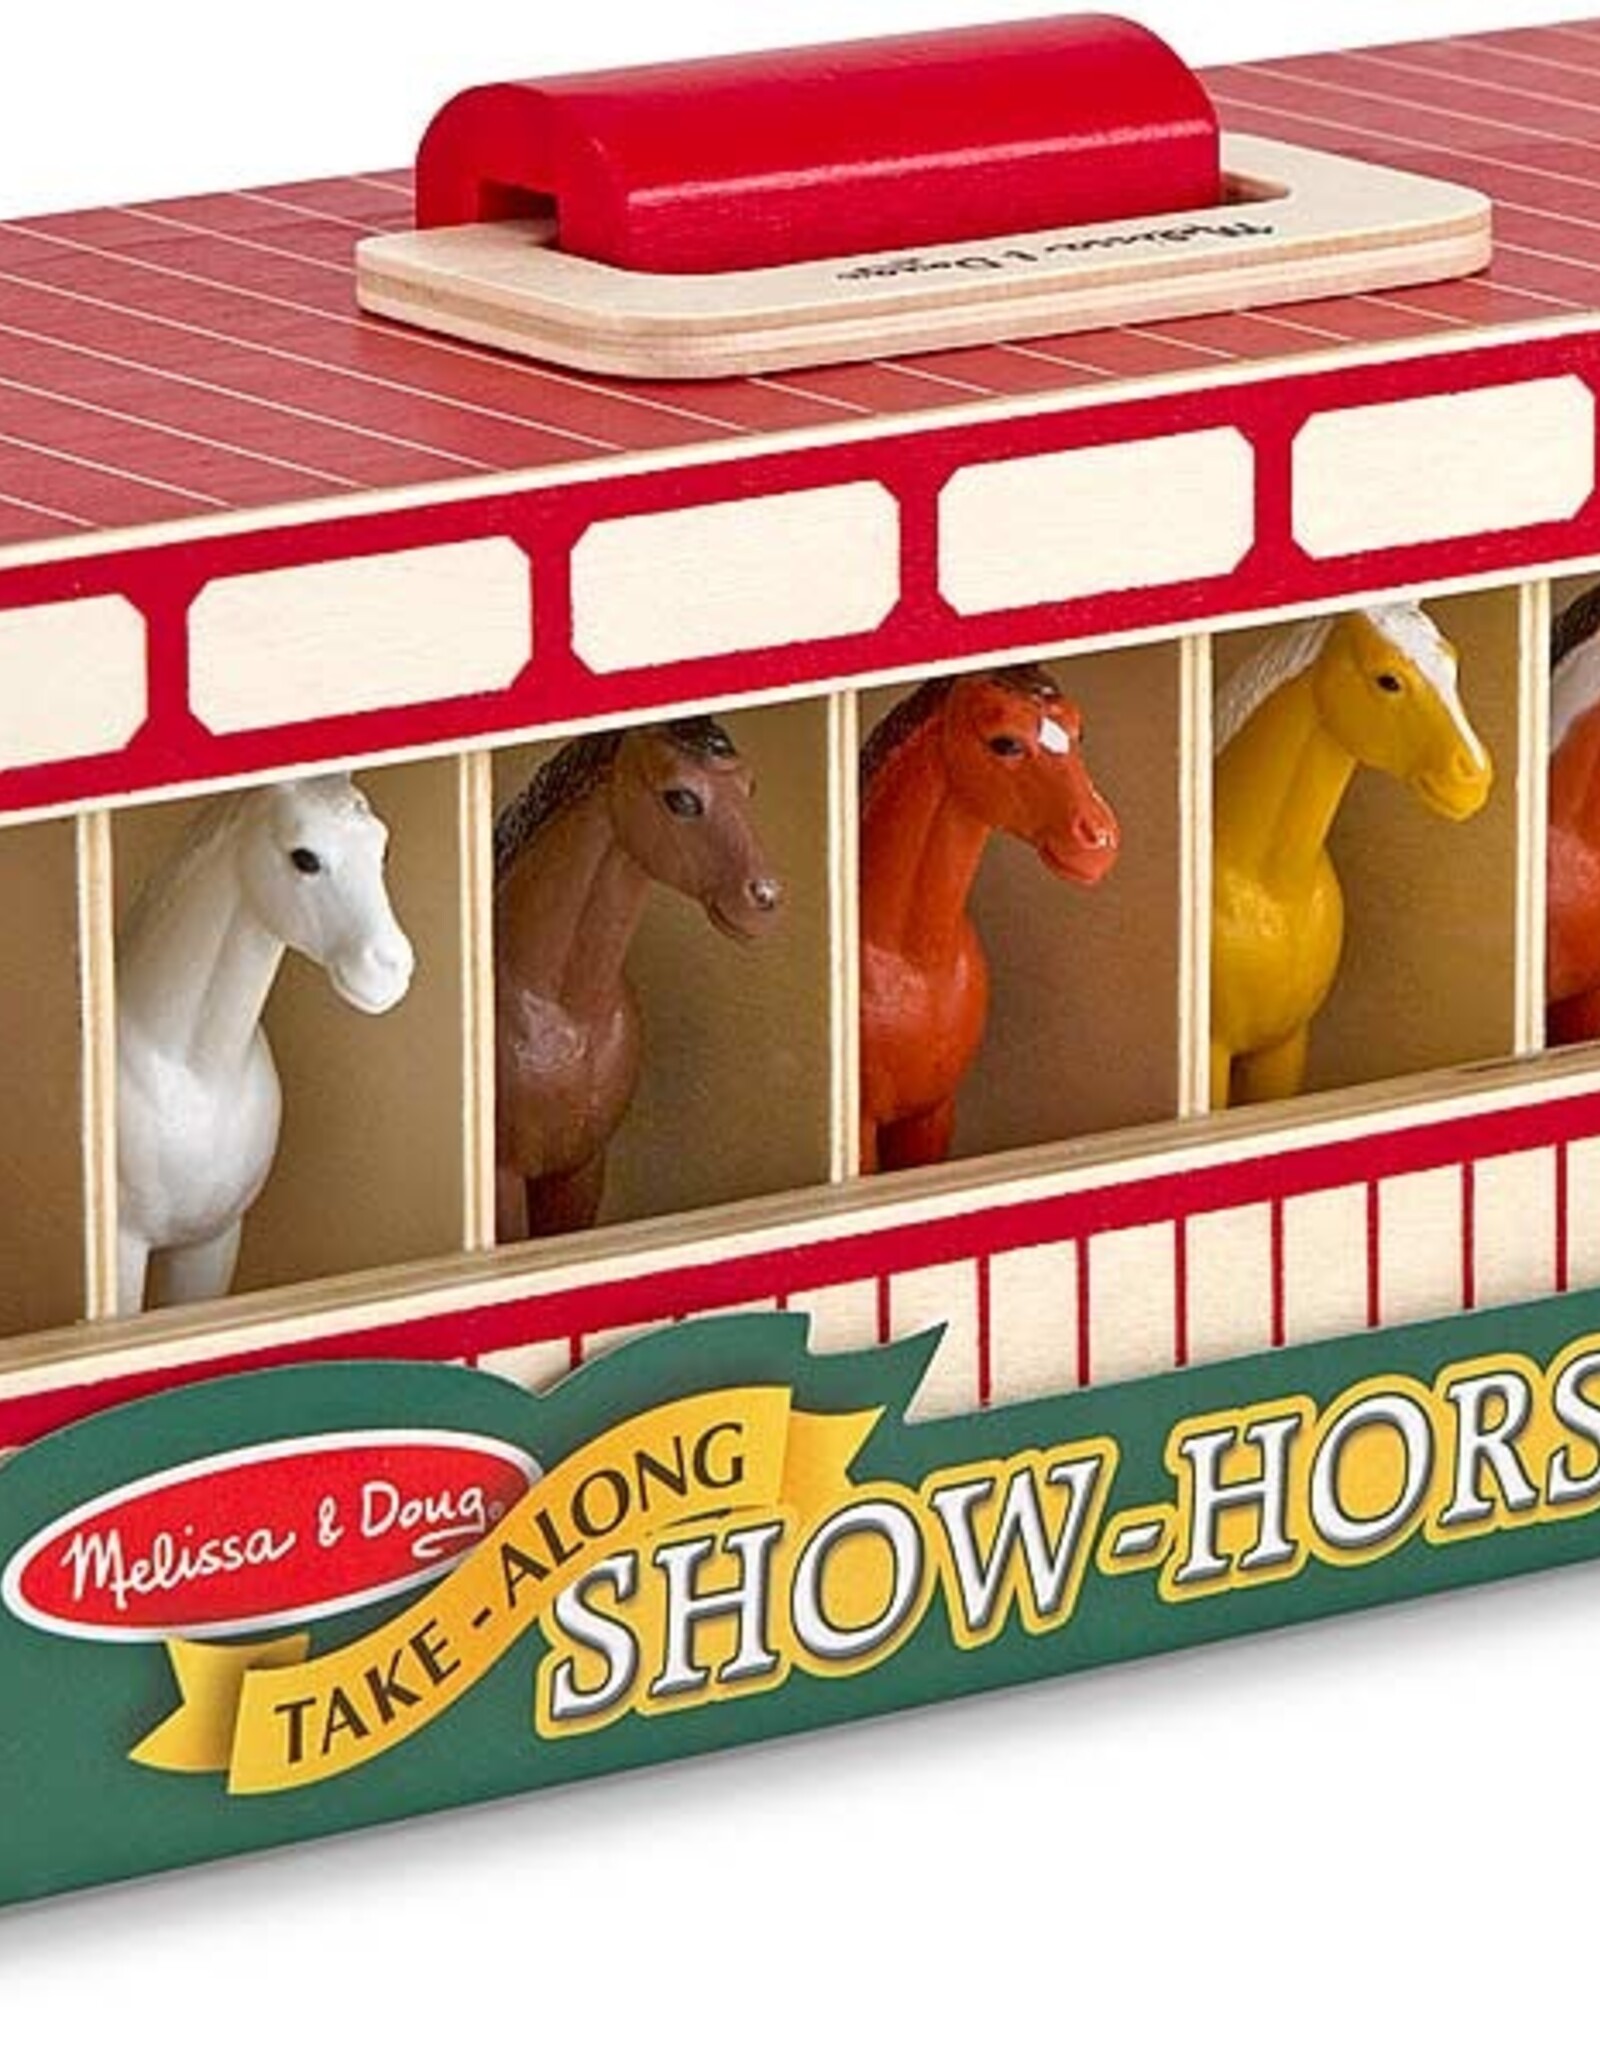 MELISSA & DOUG Take-Along Show-Horse Stable